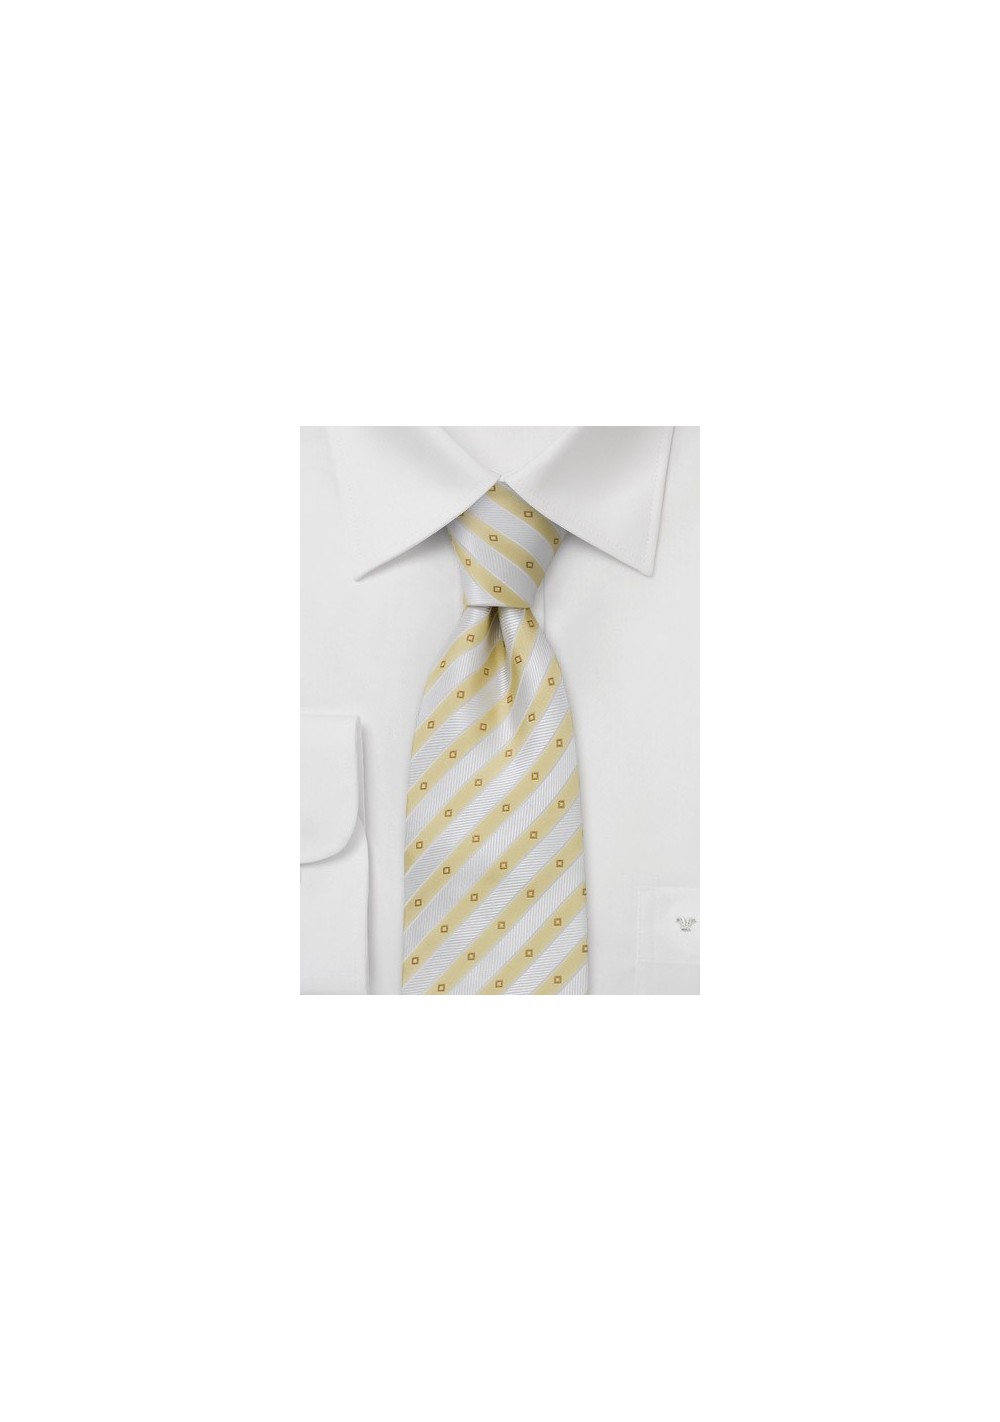 Narrow striped silk tie  - Necktie with narrow yellow and white stripes